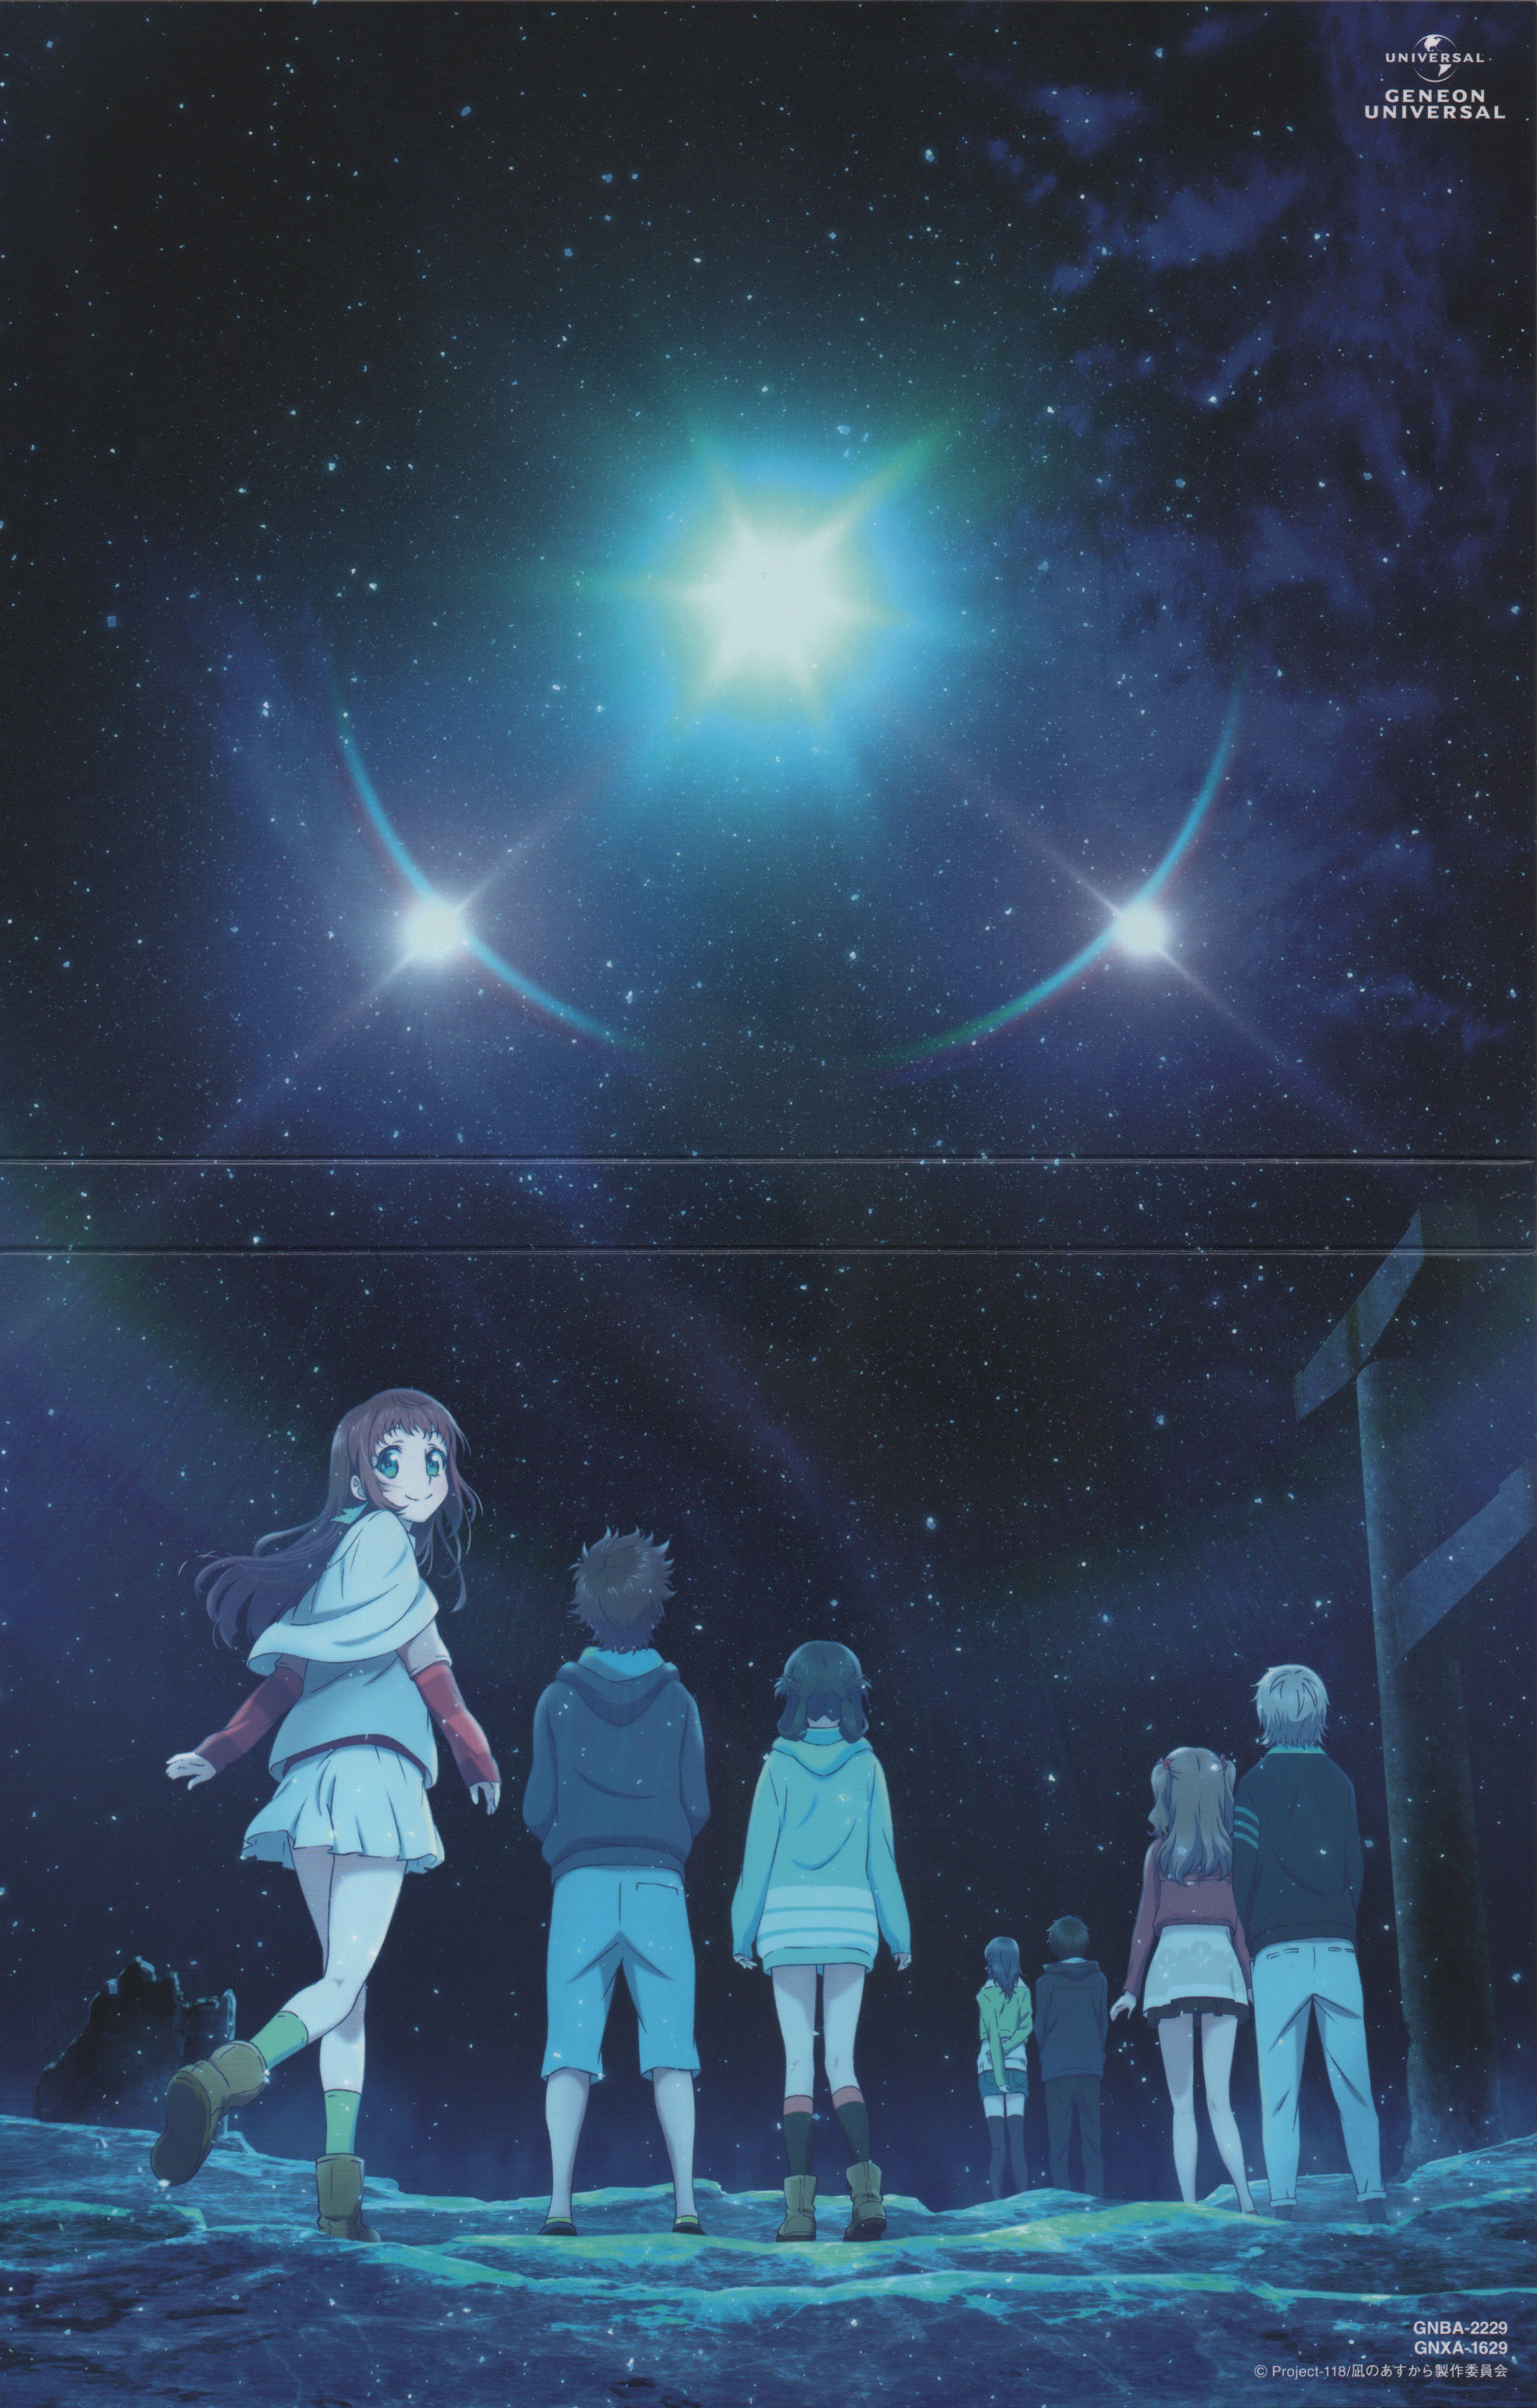 HD desktop wallpaper: Anime, Nagi No Asukara download free picture #1273486